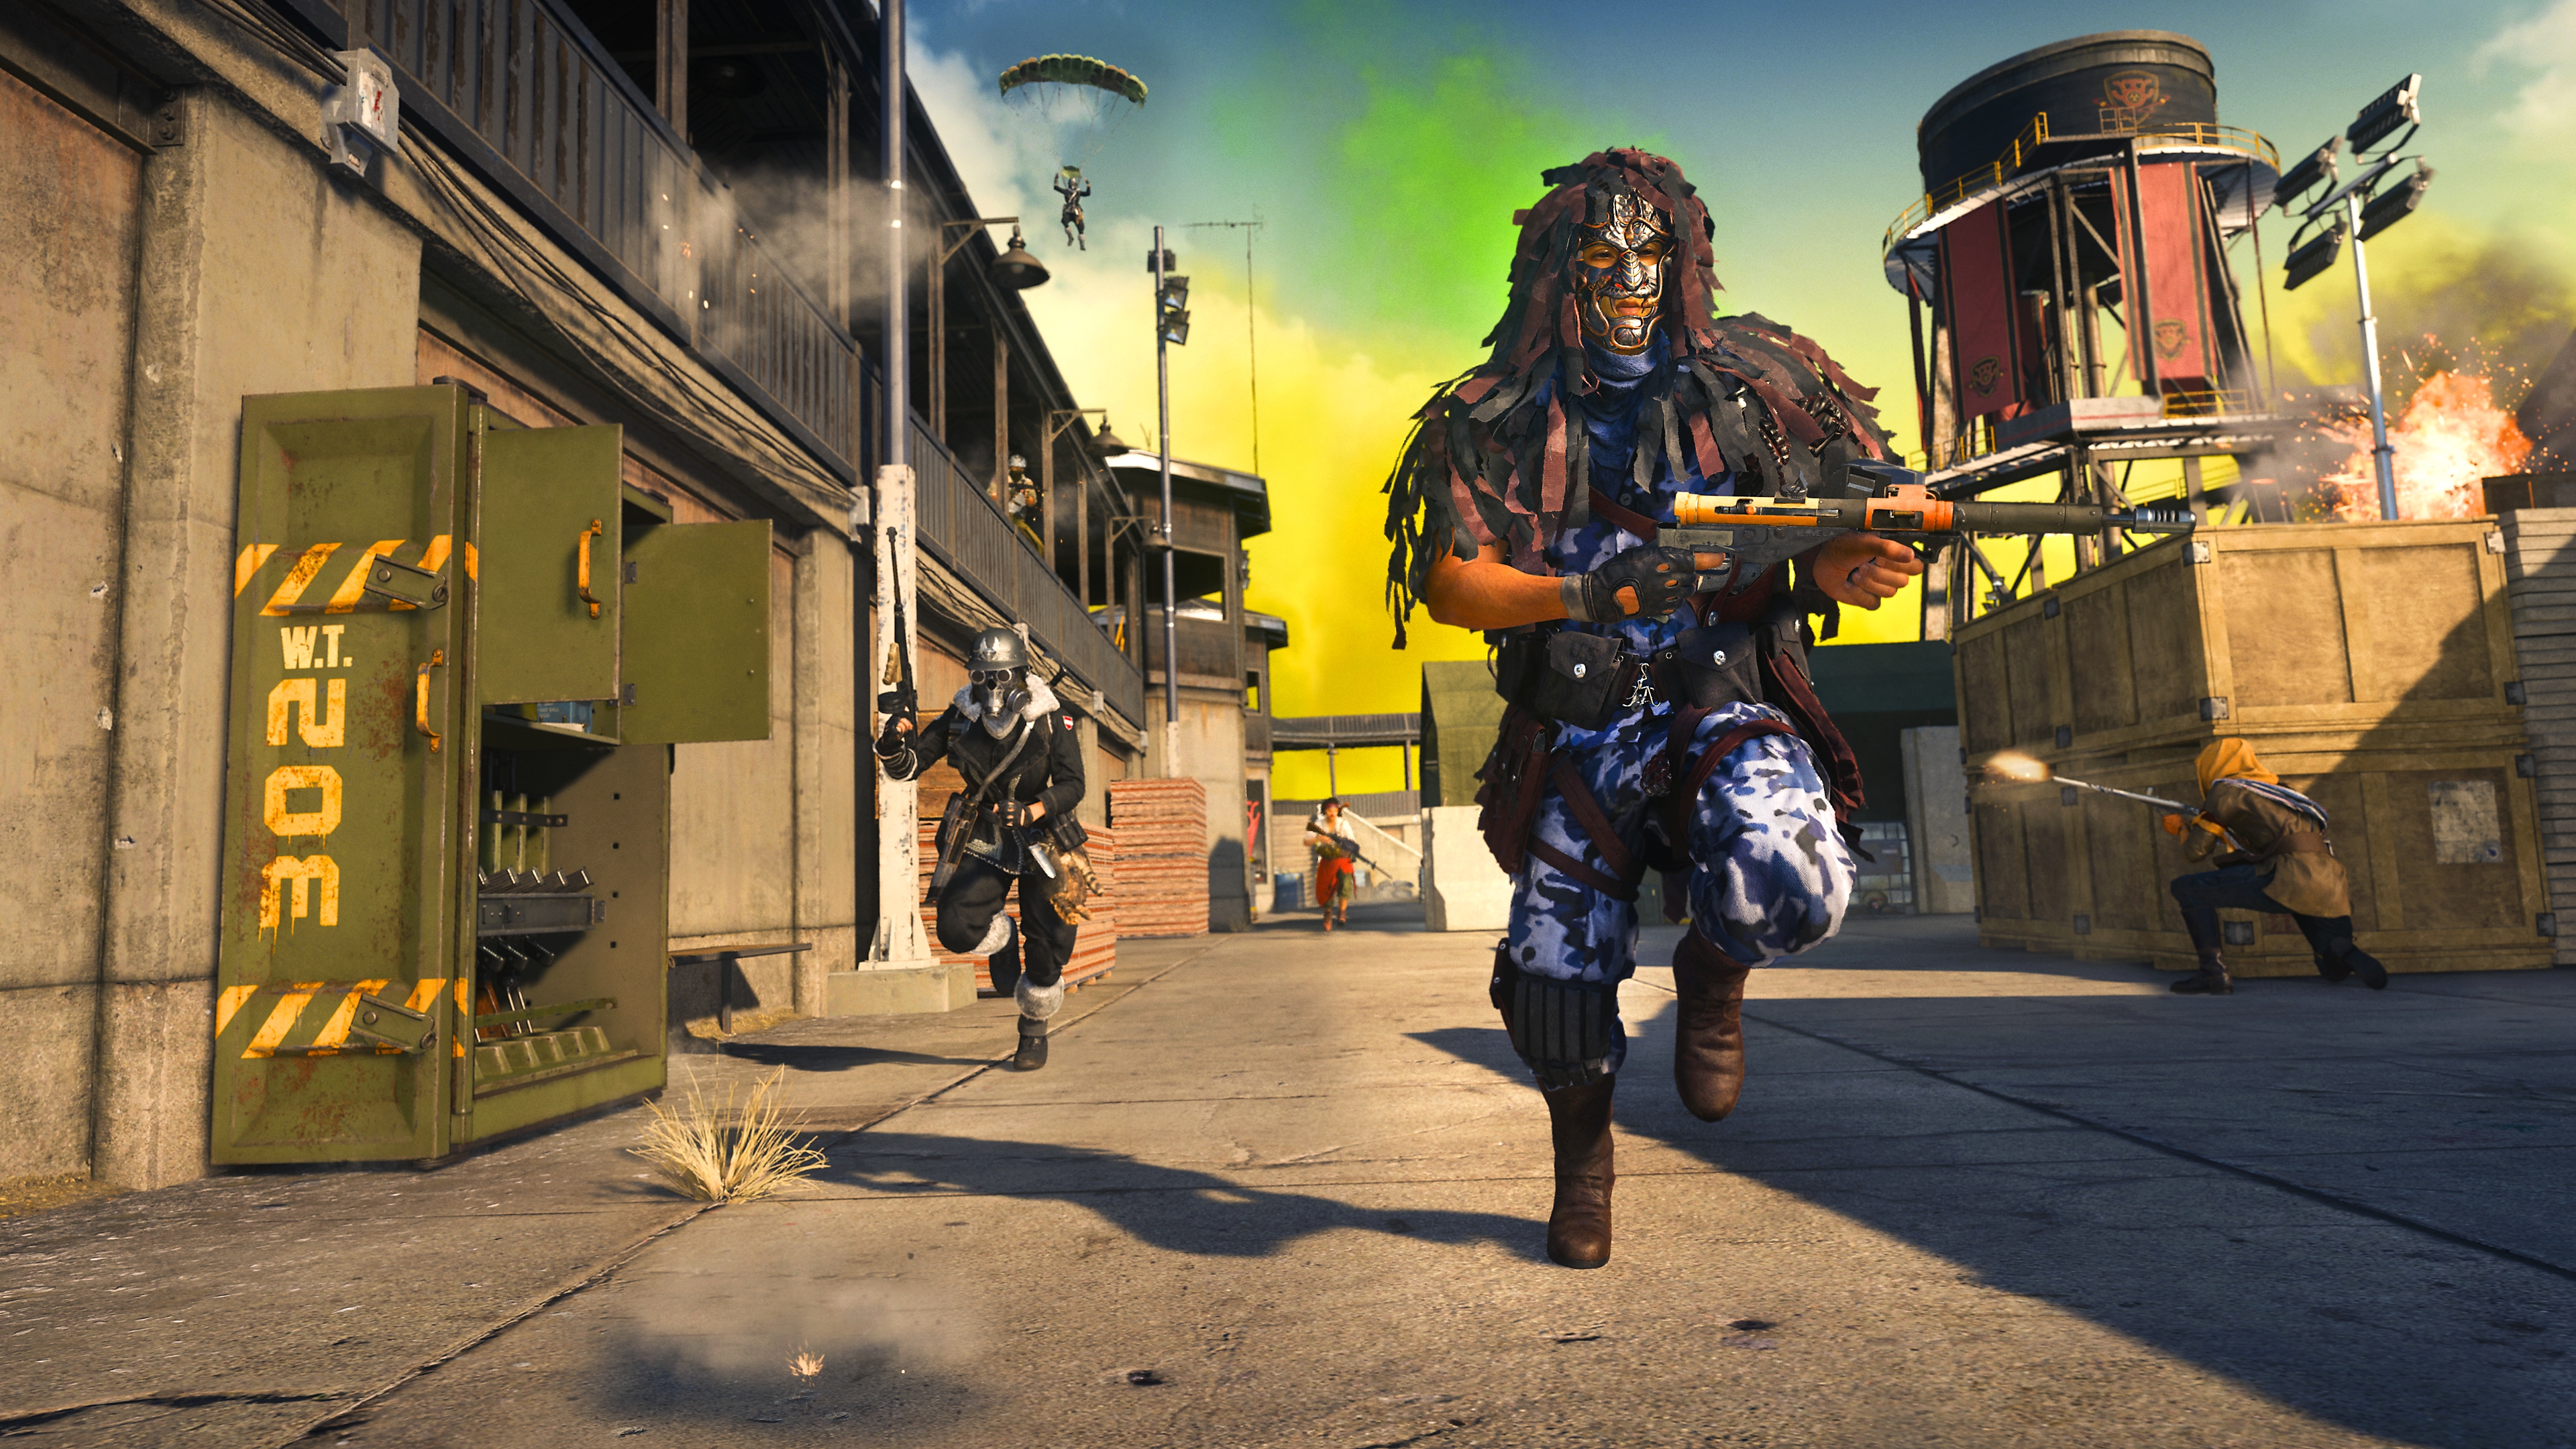 Call of Duty Warzone – zrzut ekranu przedstawiający dwóch graczy uciekających przed chmurą żółtego gazu